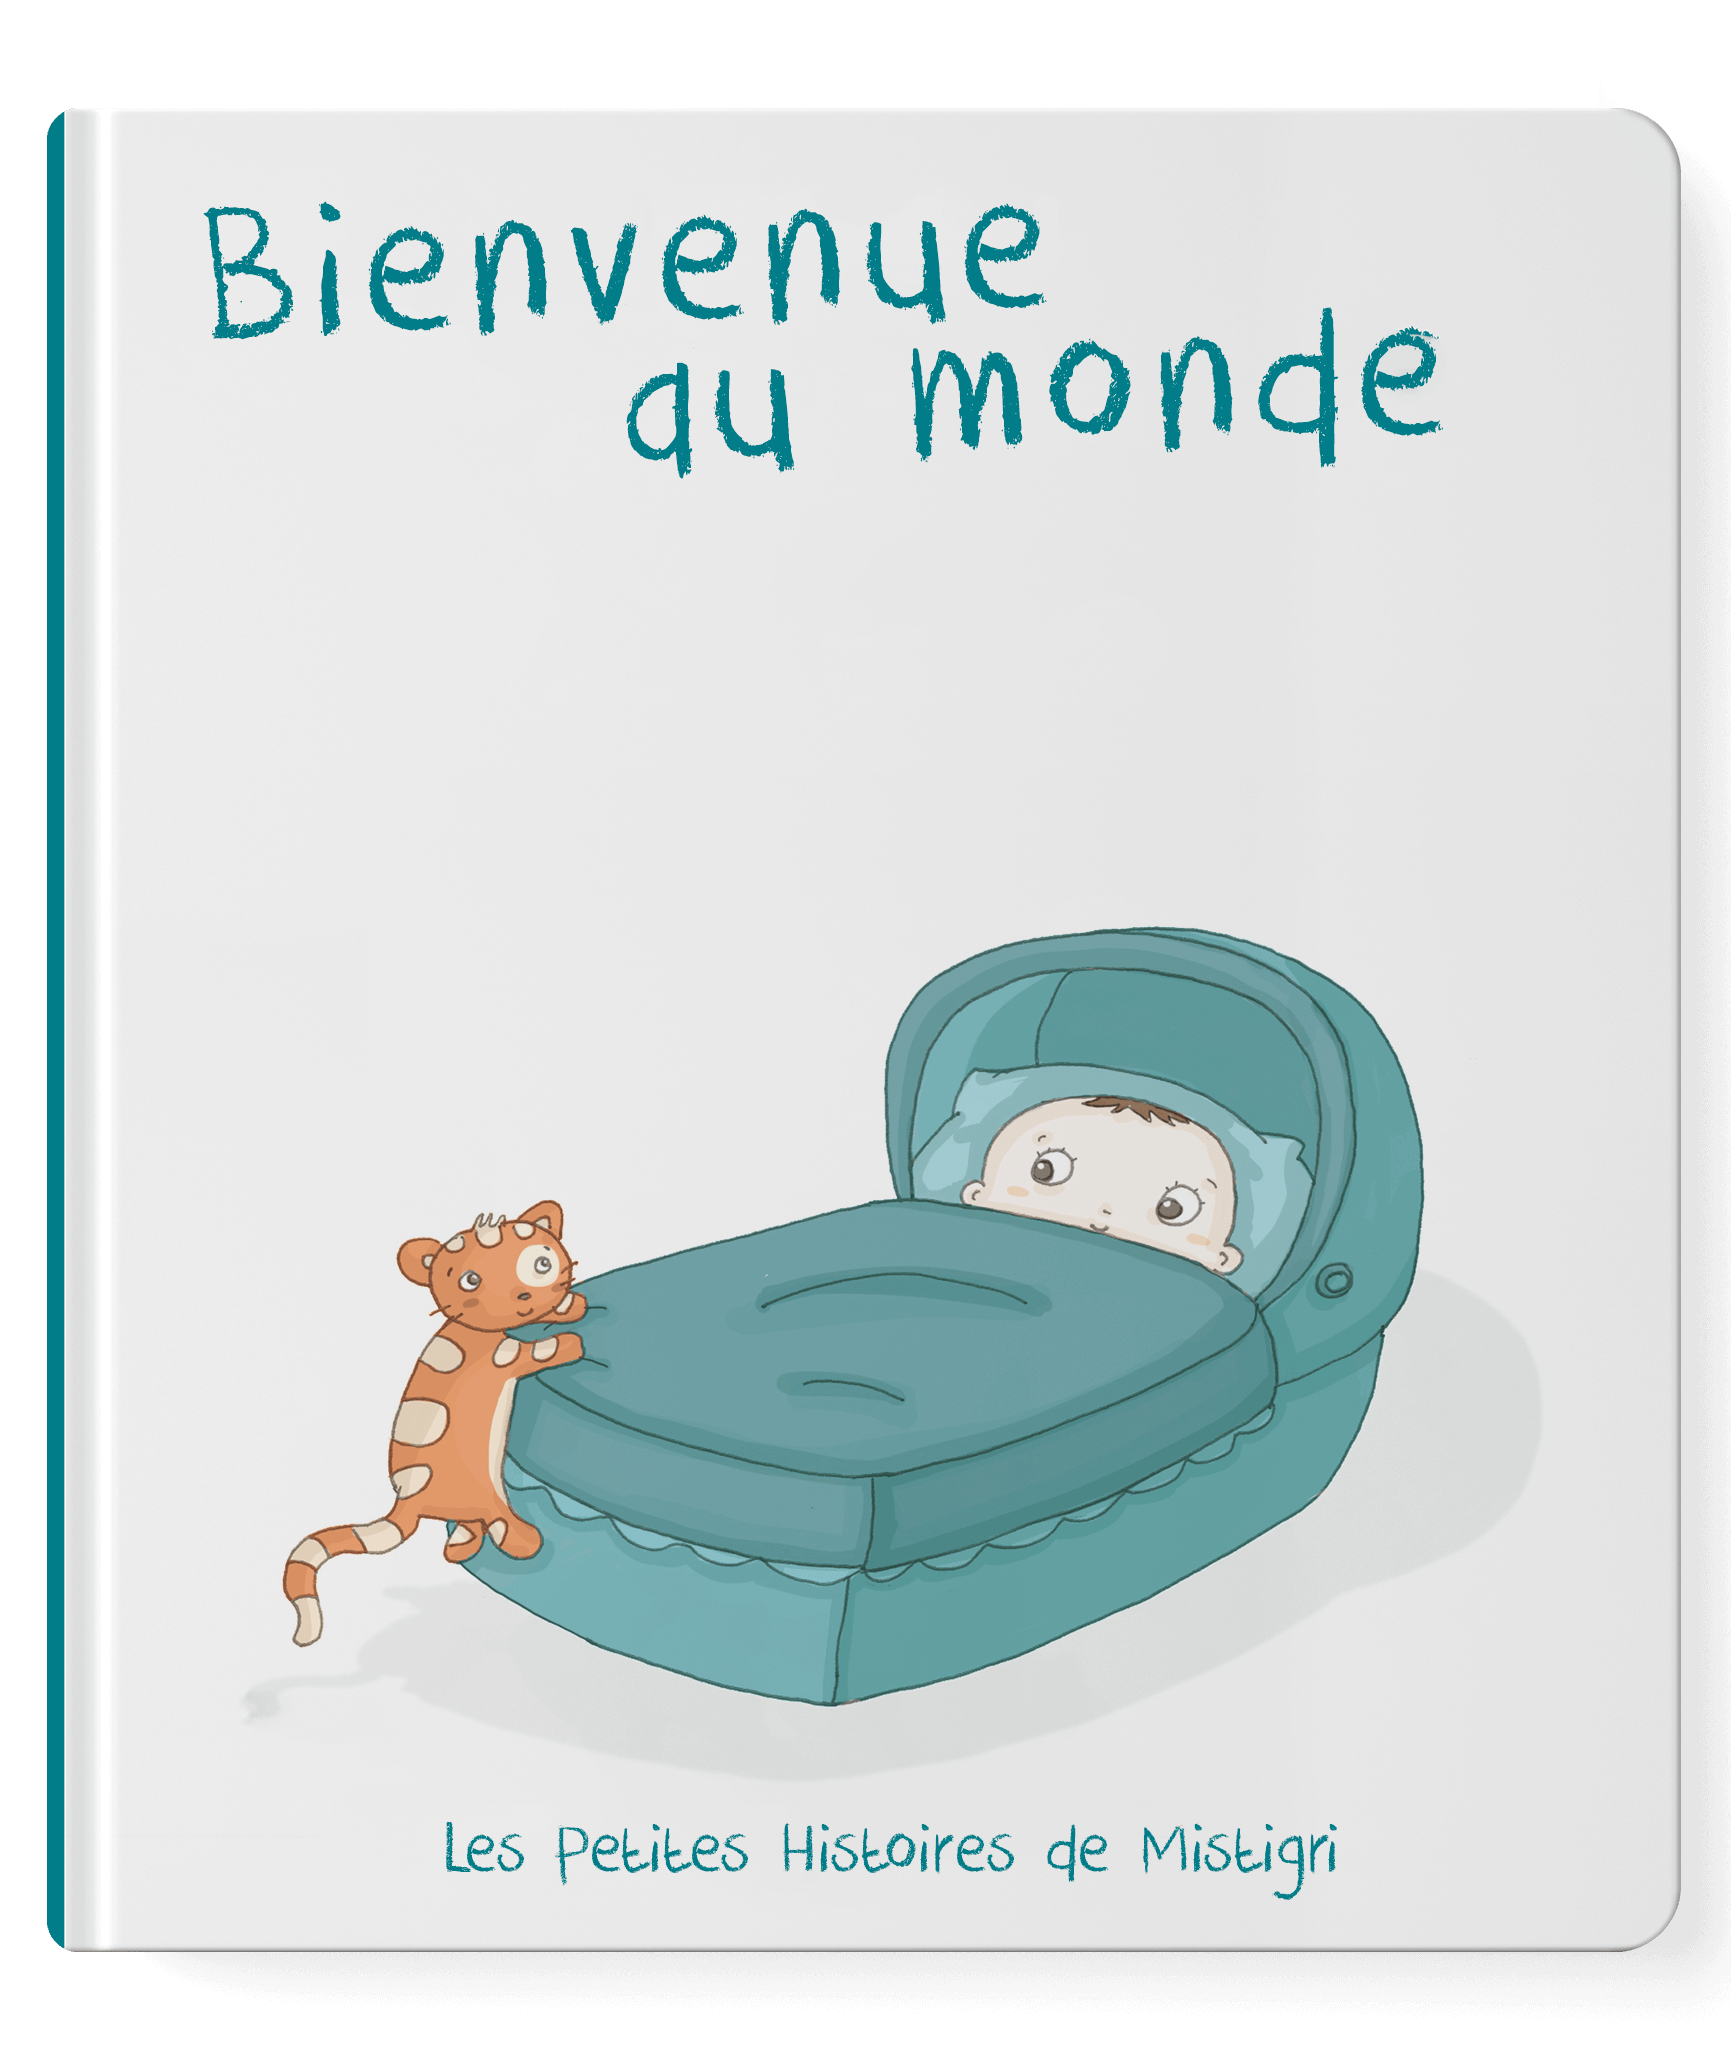 Notre sélection de livres bébé made in France